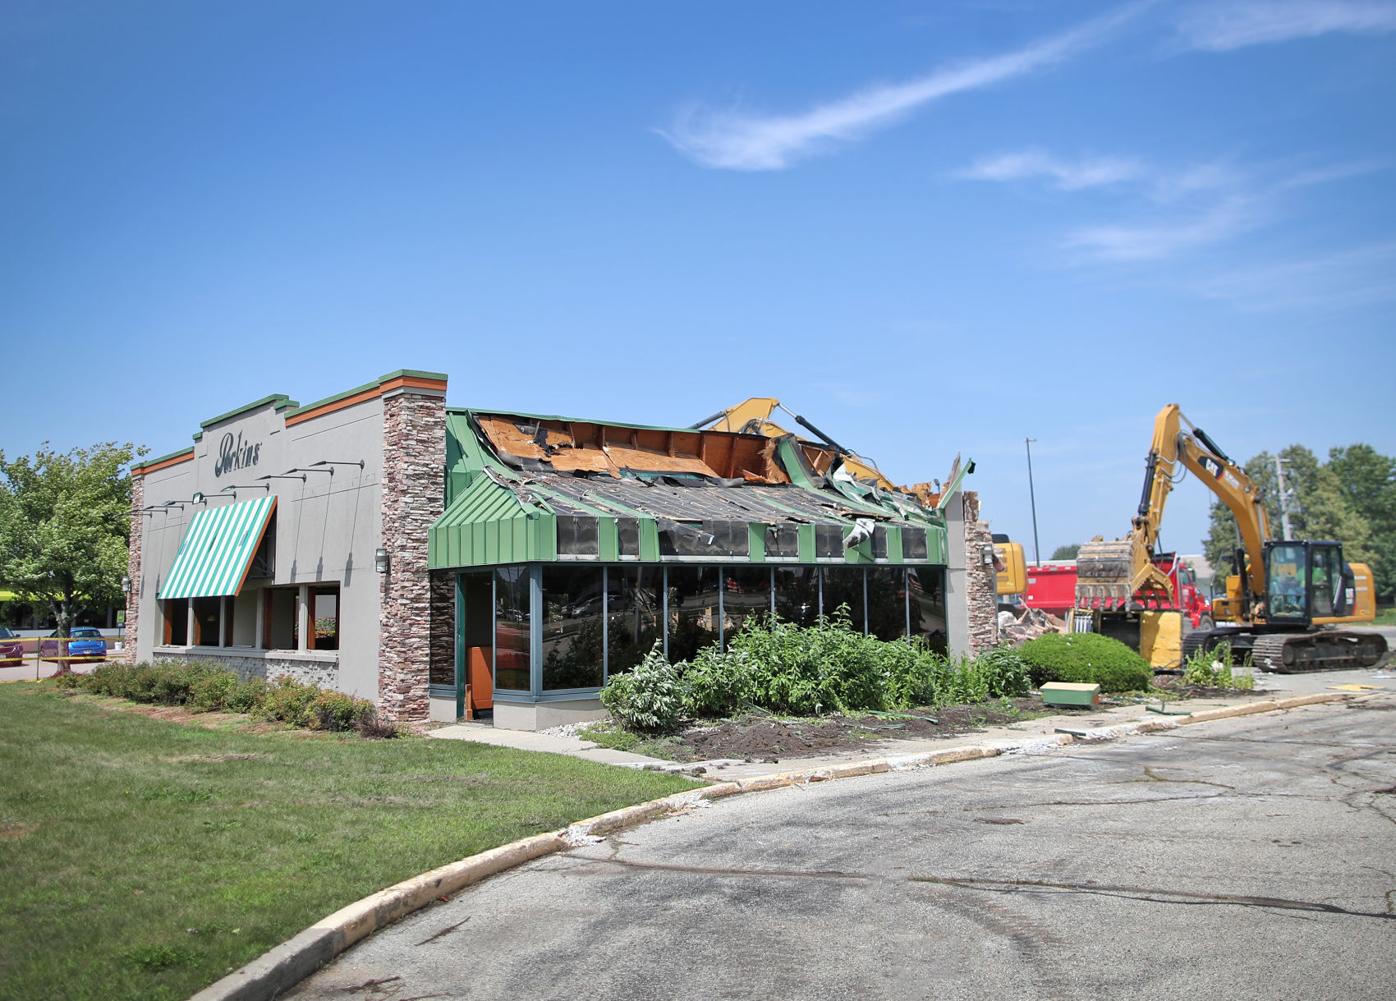 Janesville Perkins Restaurant Razed, New Eatery to be Developed on Site